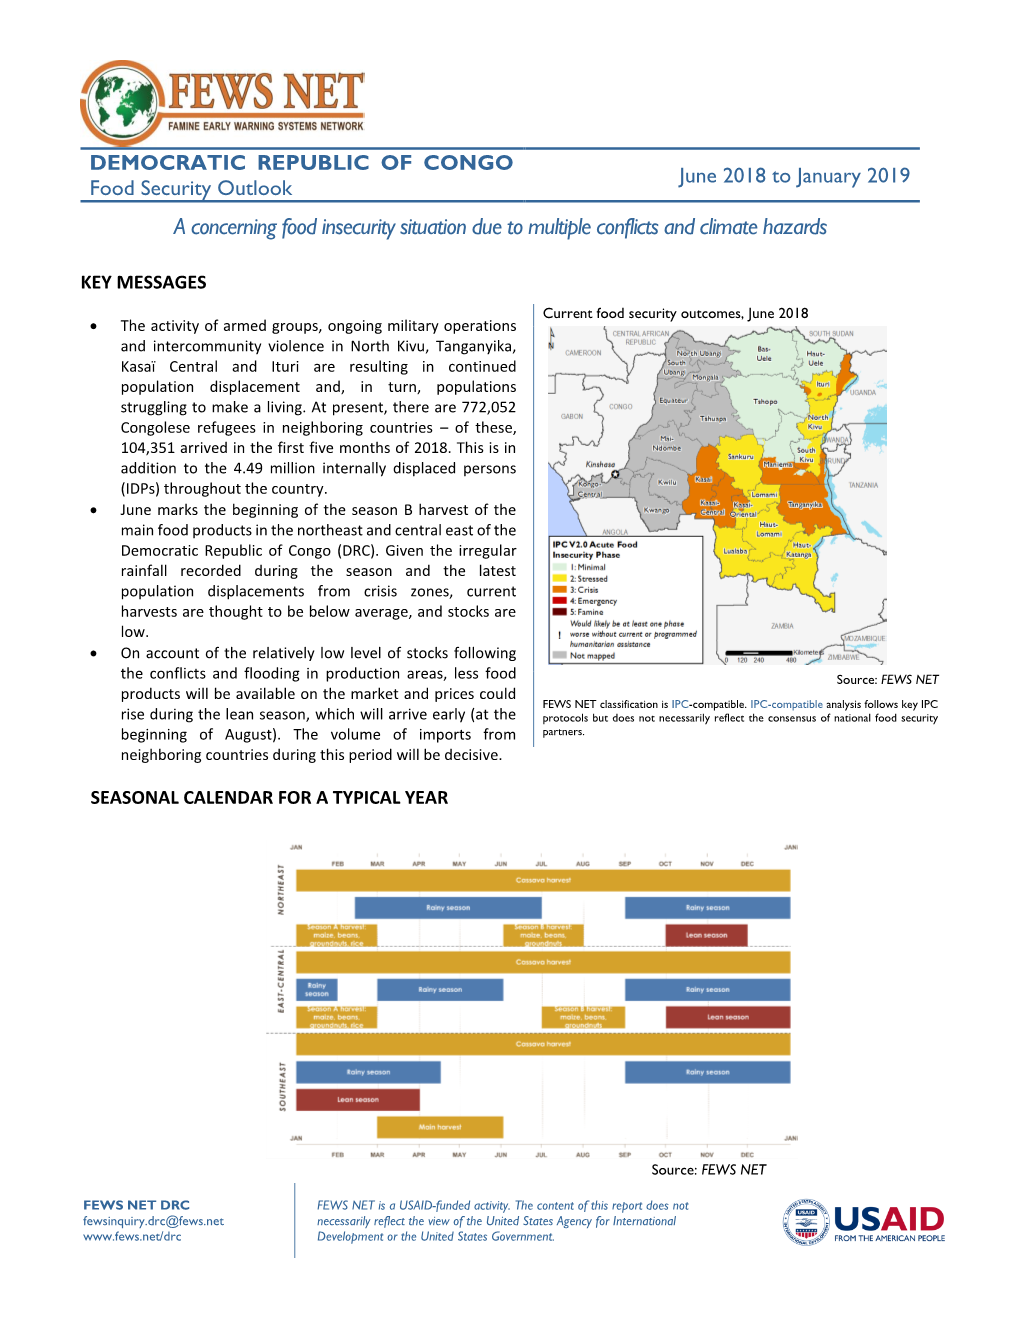 Democratic Republic of Congo Food Security Outlook Report June 2018